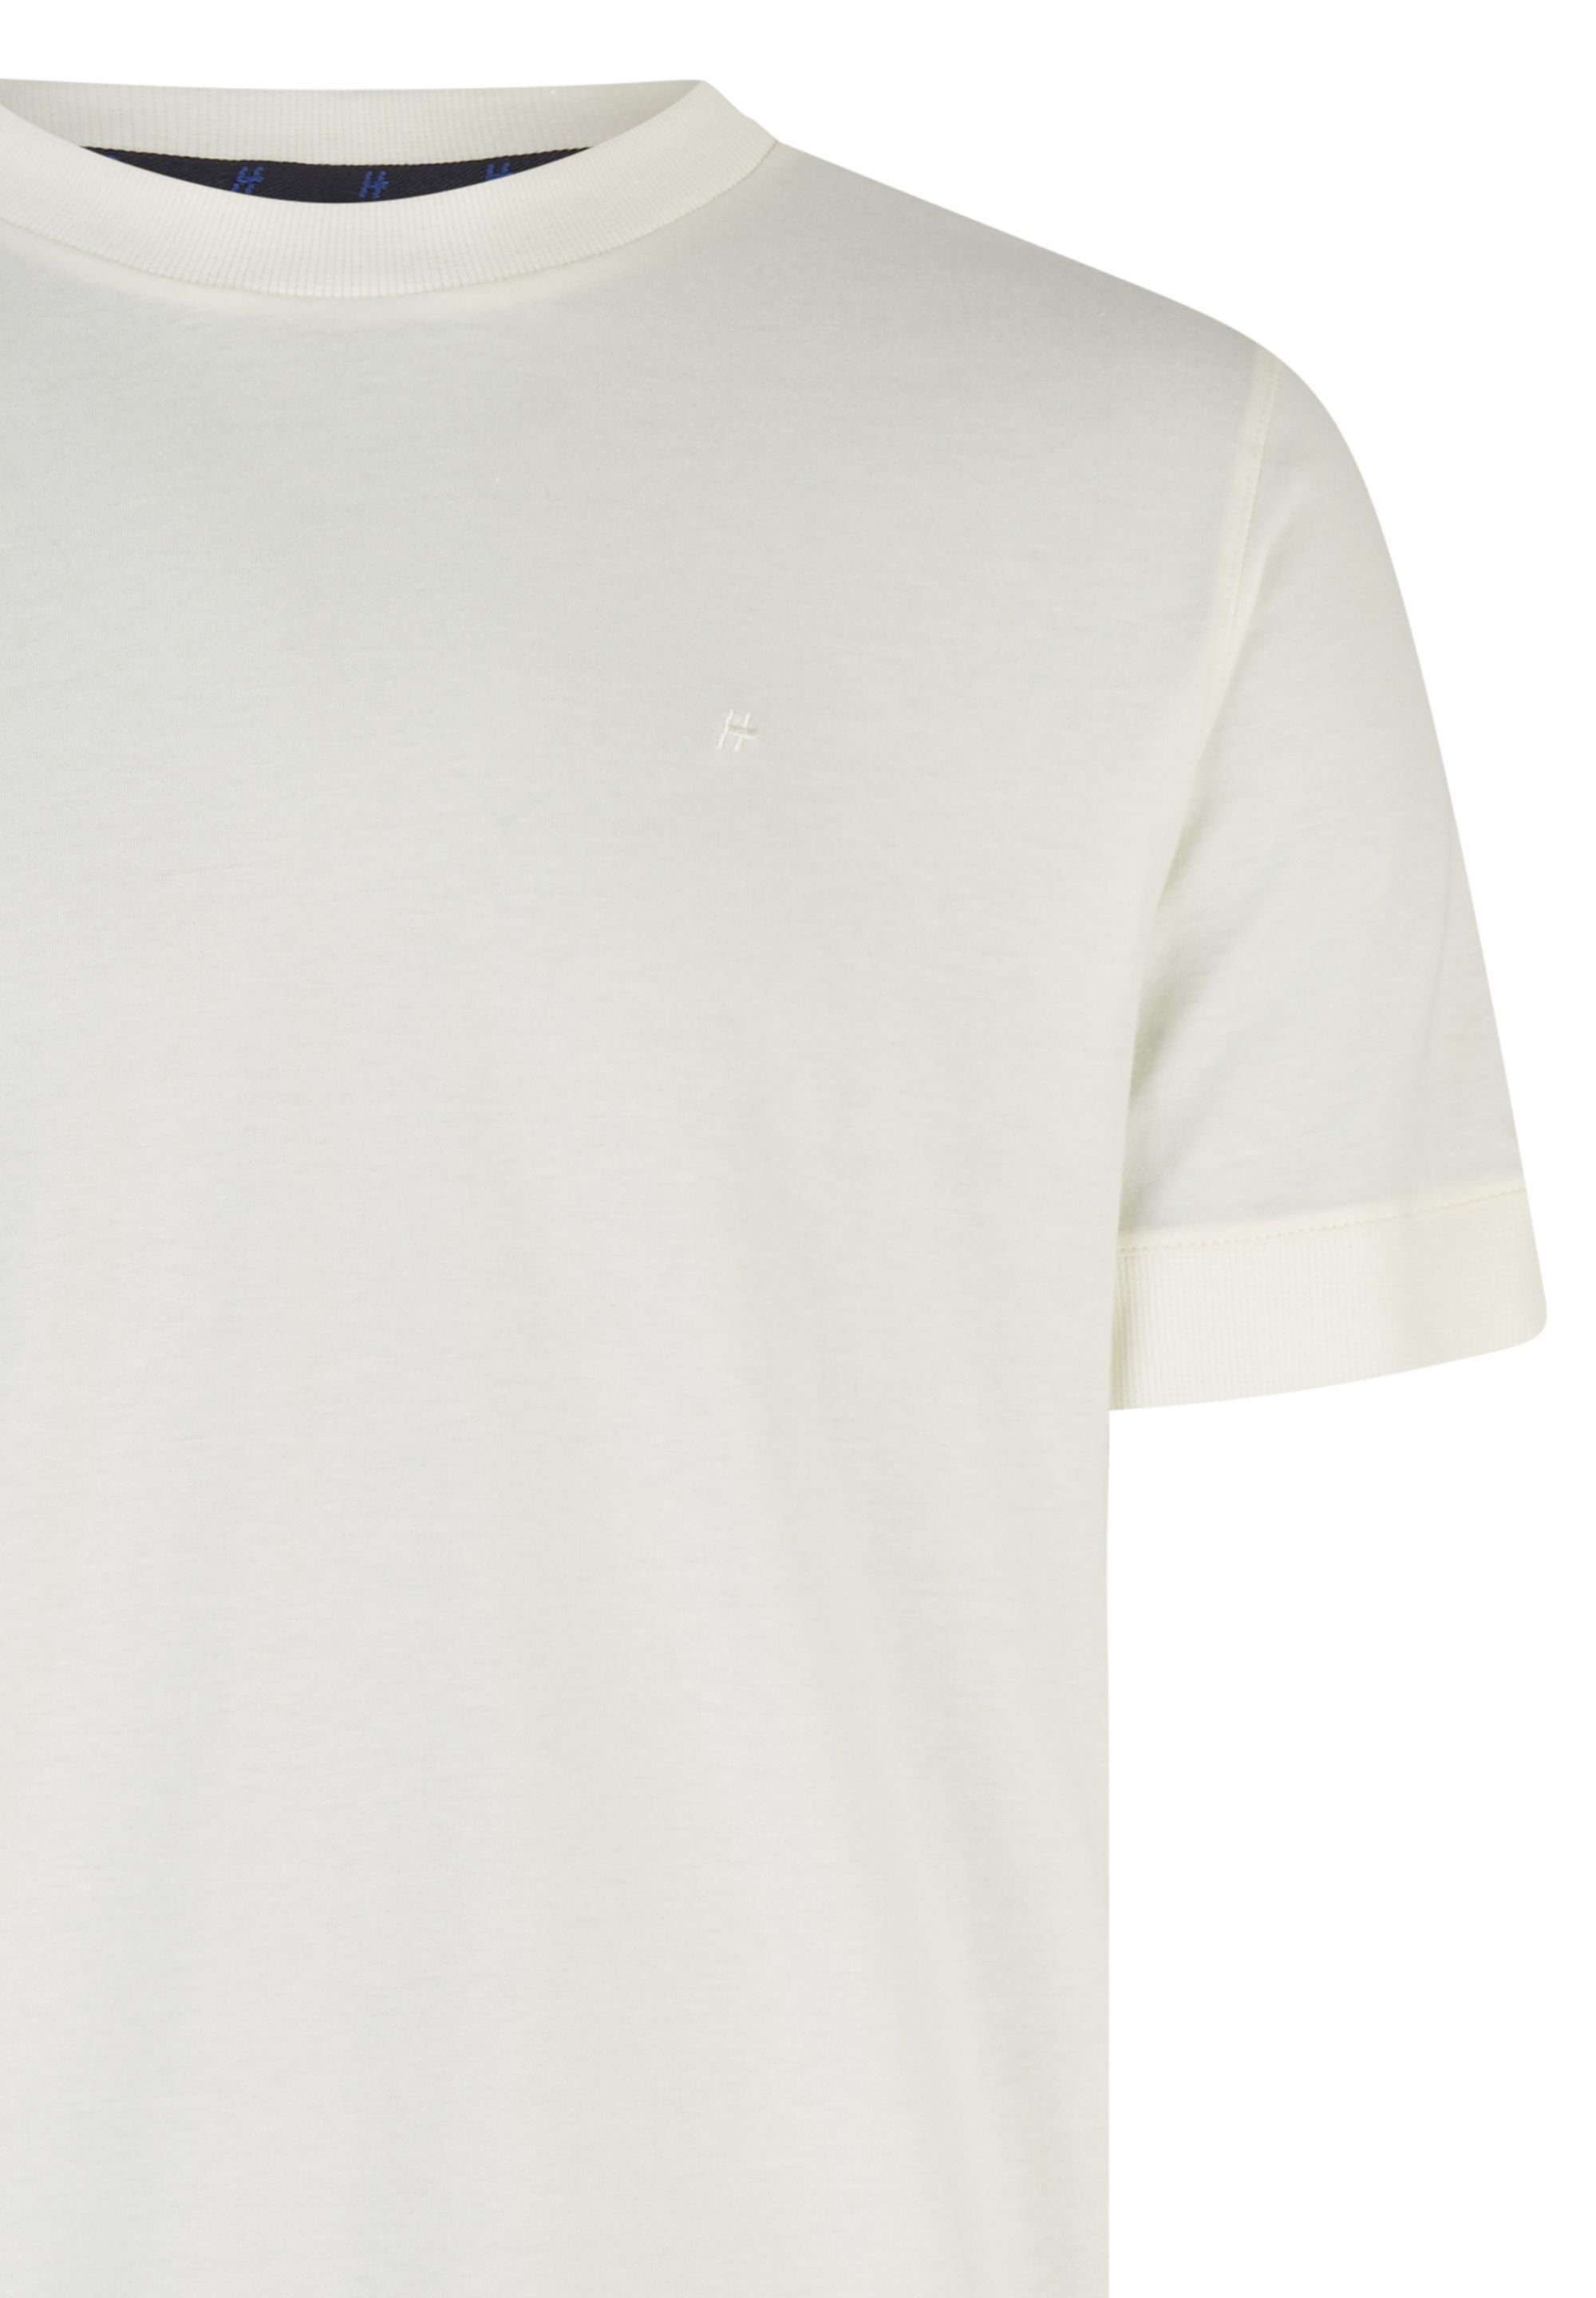 HECHTER PARIS T-Shirt modischen Akzente mit offwhite